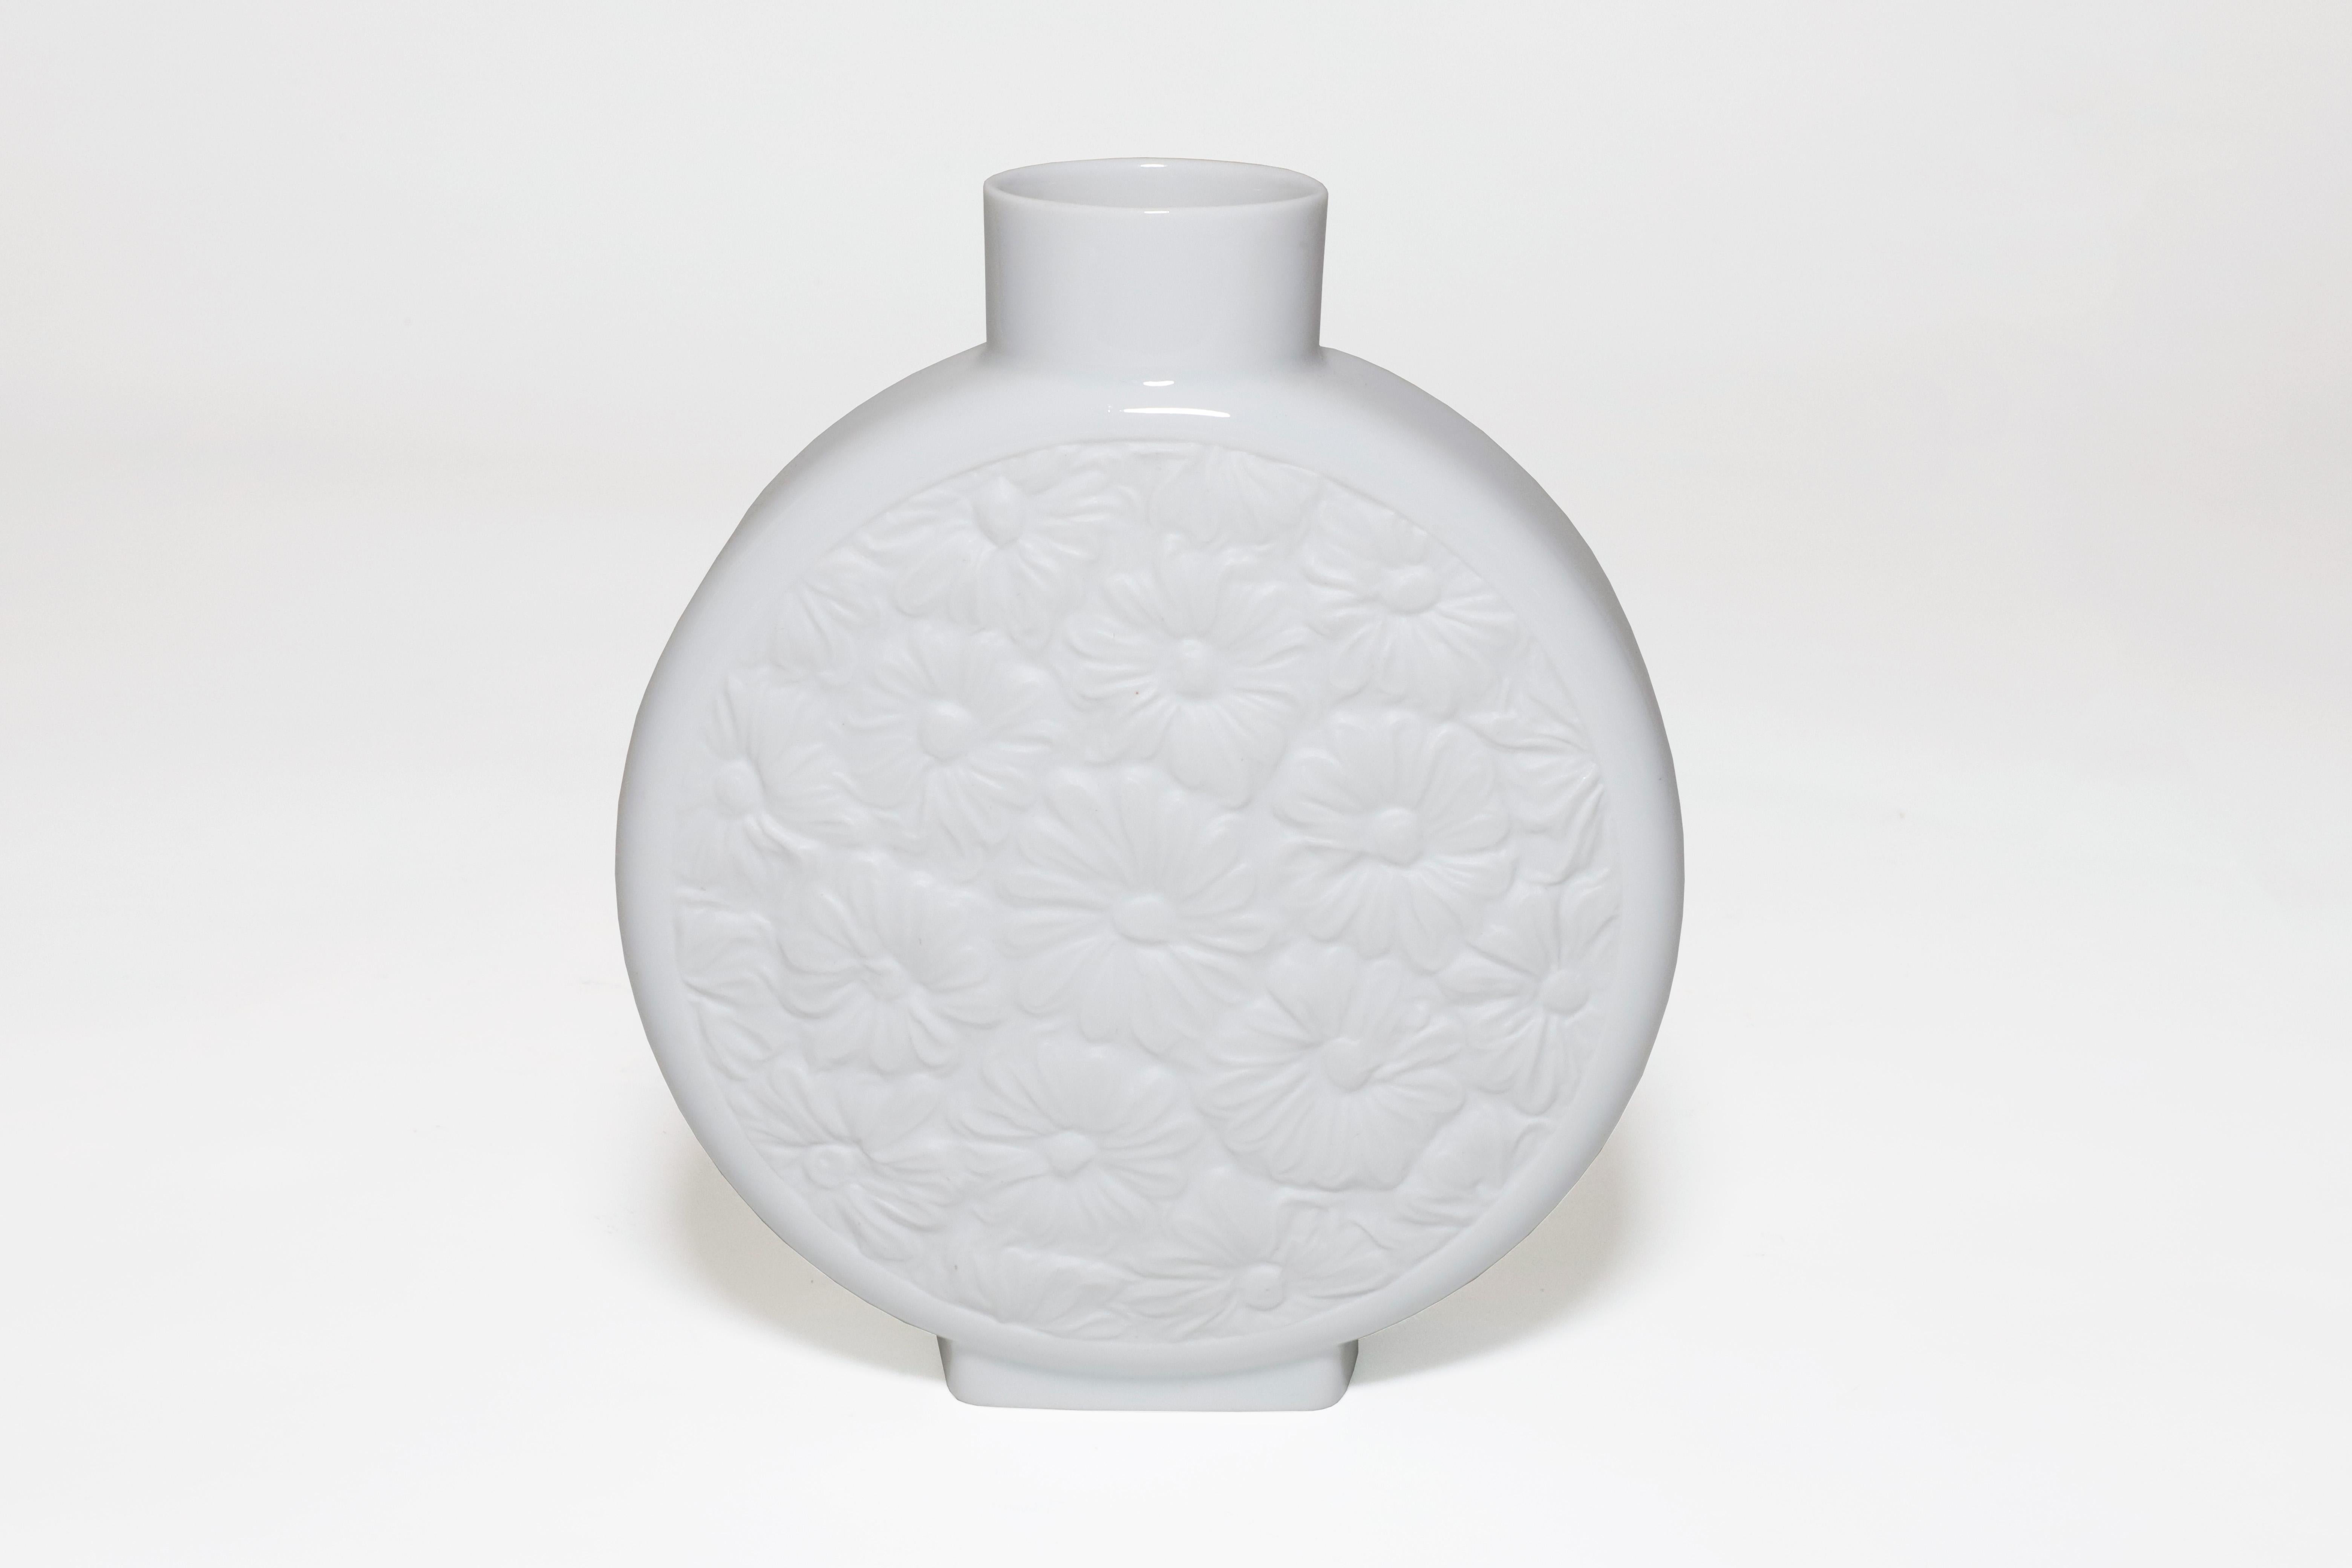 Vase élancé en porcelaine blanche de Whiting Selb Barvaria. Motif floral mat sur chaque face et glaçure blanche brillante sur le reste du vase. Estampillé sur le fond. Fabriqué en Allemagne au milieu du 20e siècle. 

Propriété de l'estimable